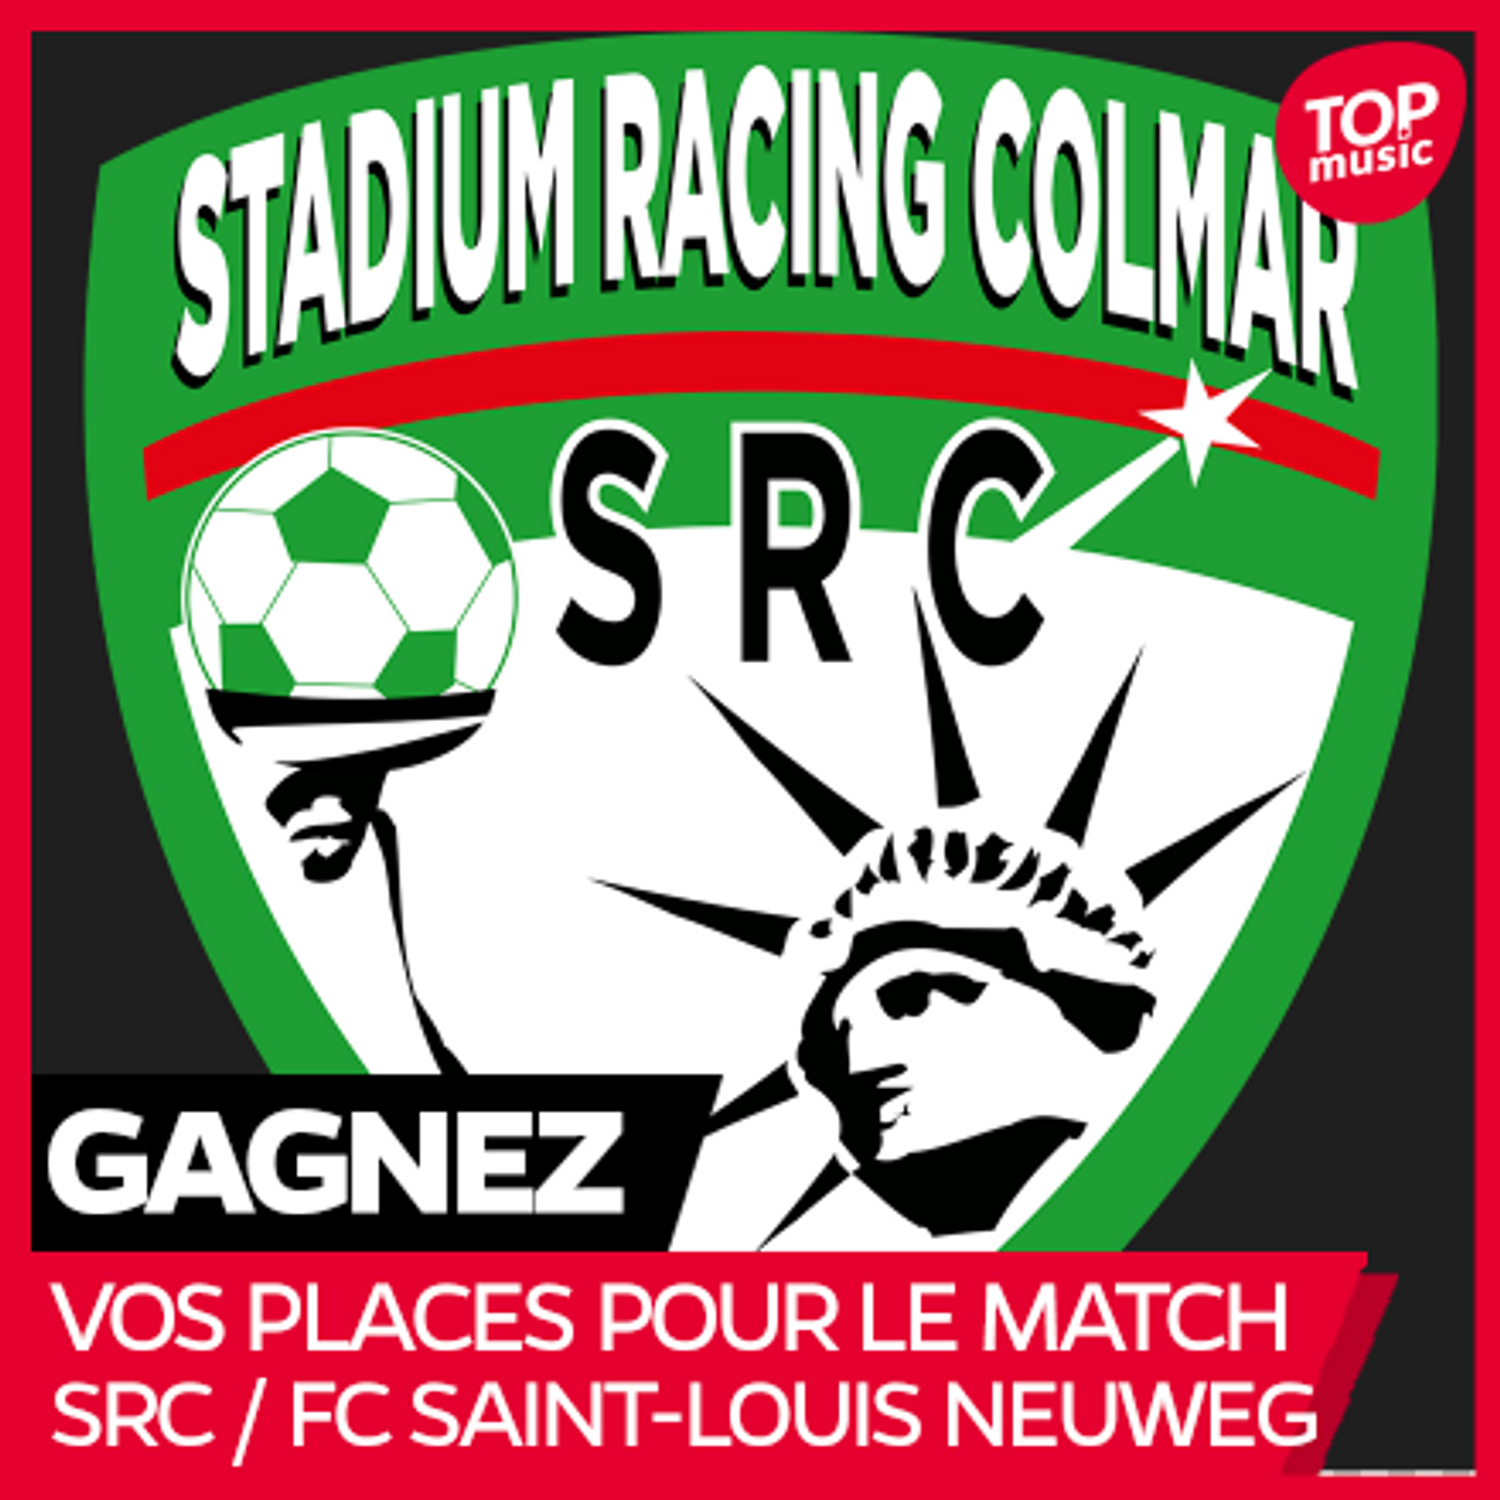 Vos places pour le match SR COLMAR vs FC SAINT-LOUIS NEUWEG !